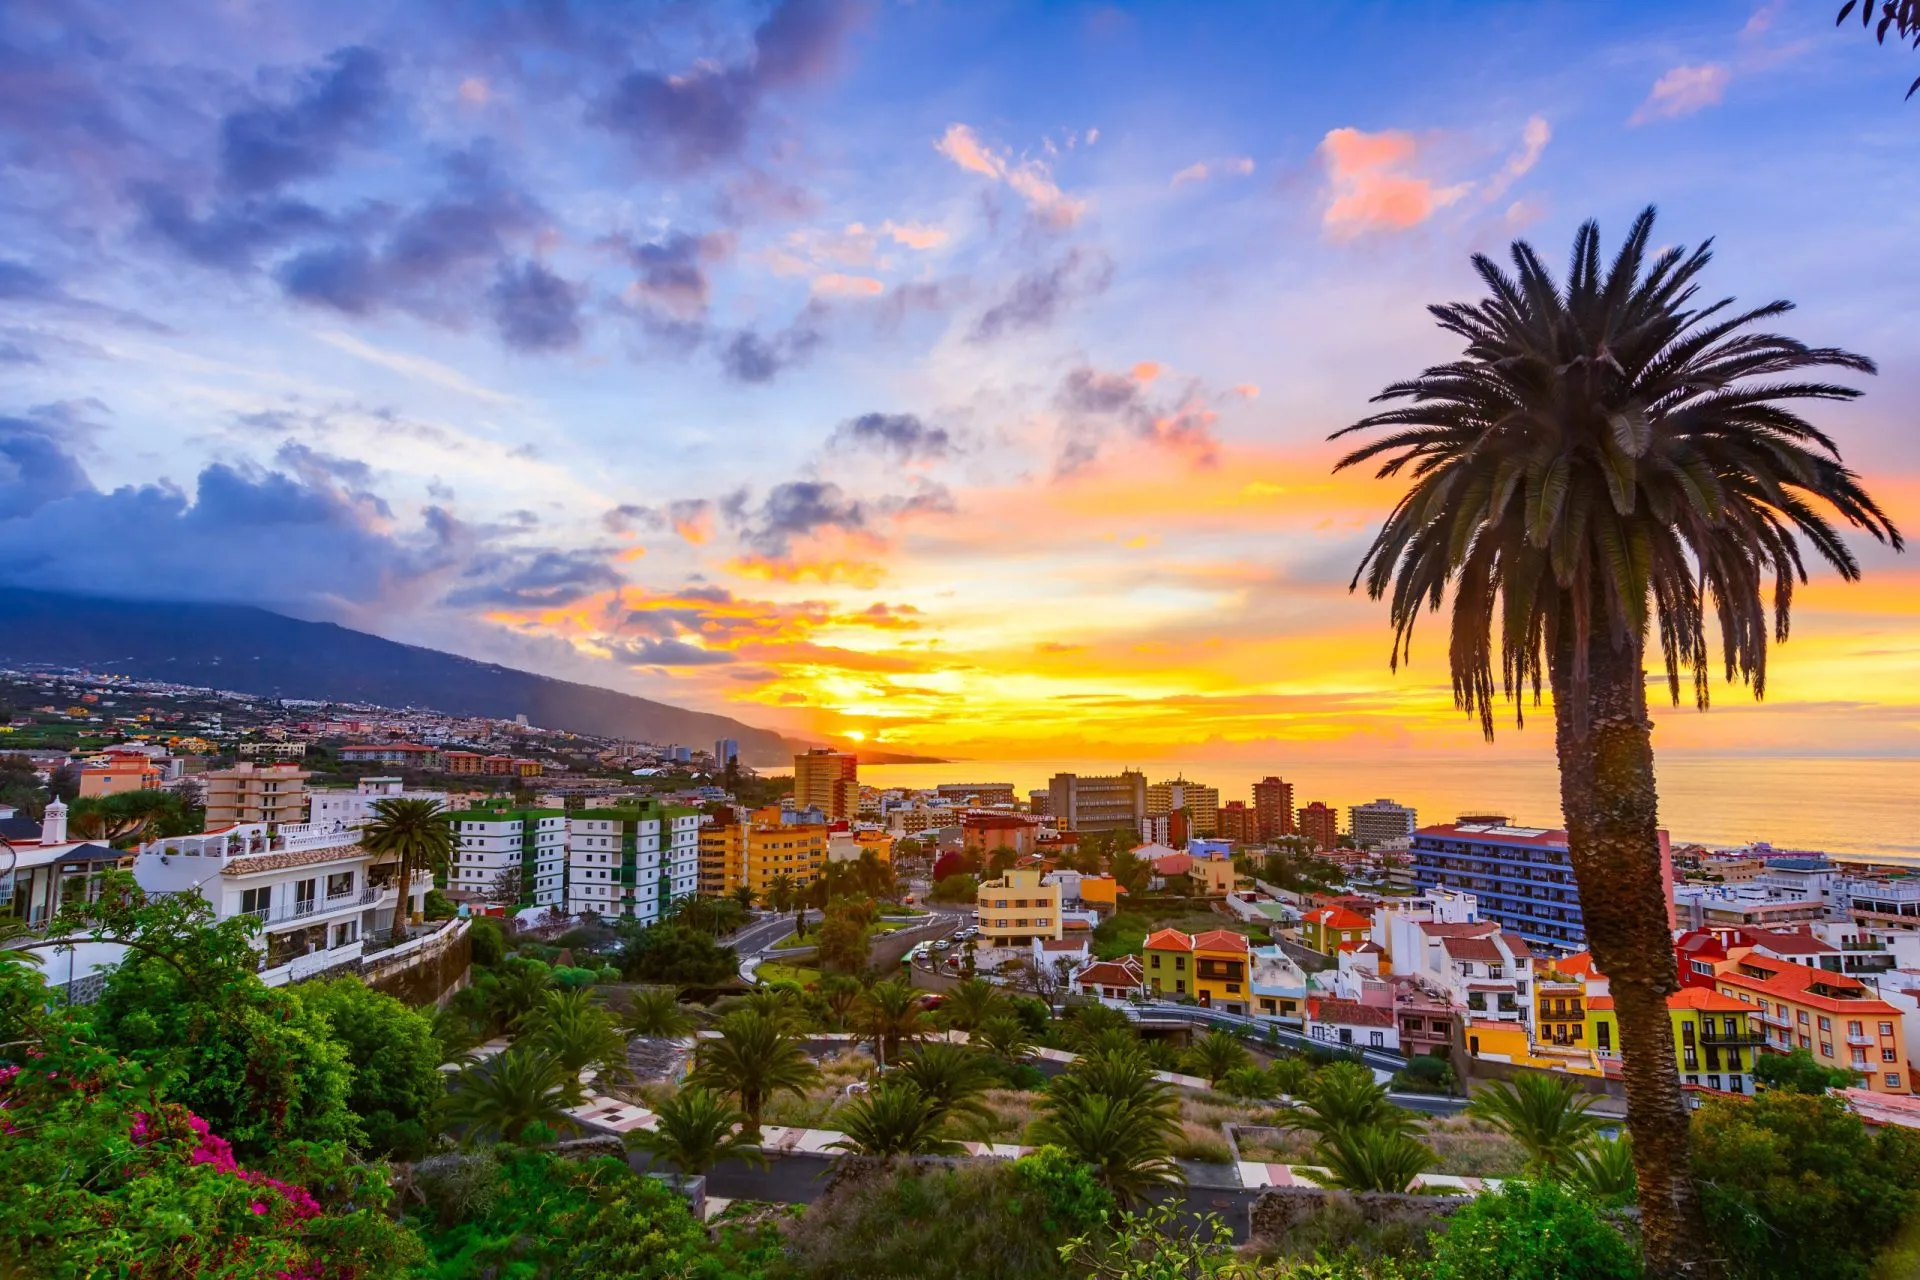 Puerto de la Cruz, Teneriffa, Kanarieöarna, Spanien: Sceninc utsikt över staden vid solnedgången